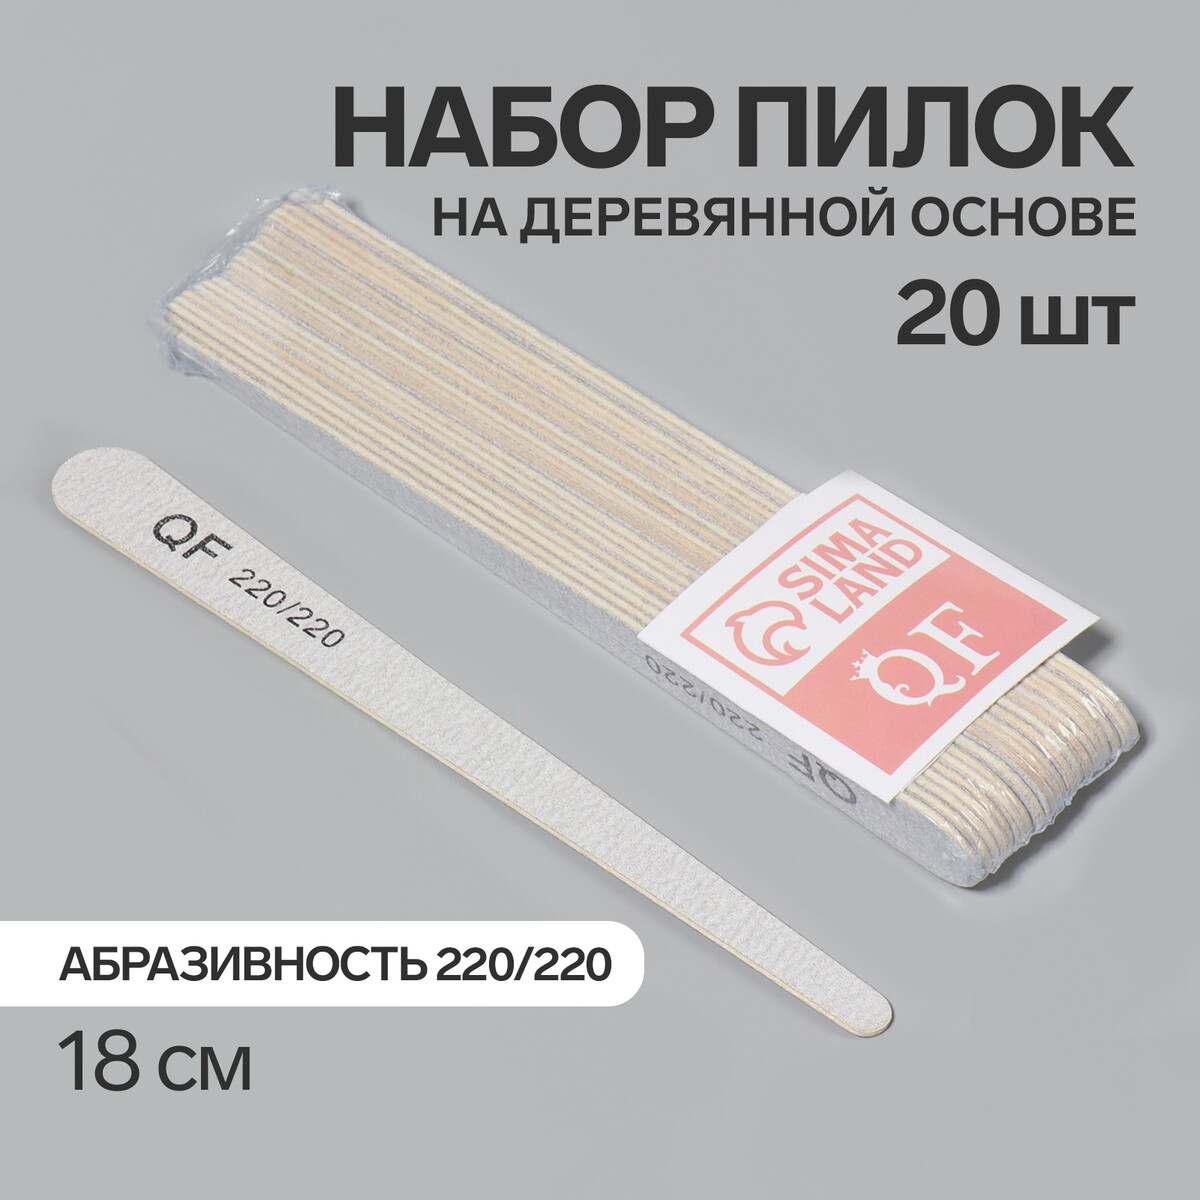 Пилка-наждак, набор 20 шт, деревянная основа, абразивность 220/220, 18 см, цвет серый основа и сменные файлы для пилки 18 см 10 шт абразивность 100